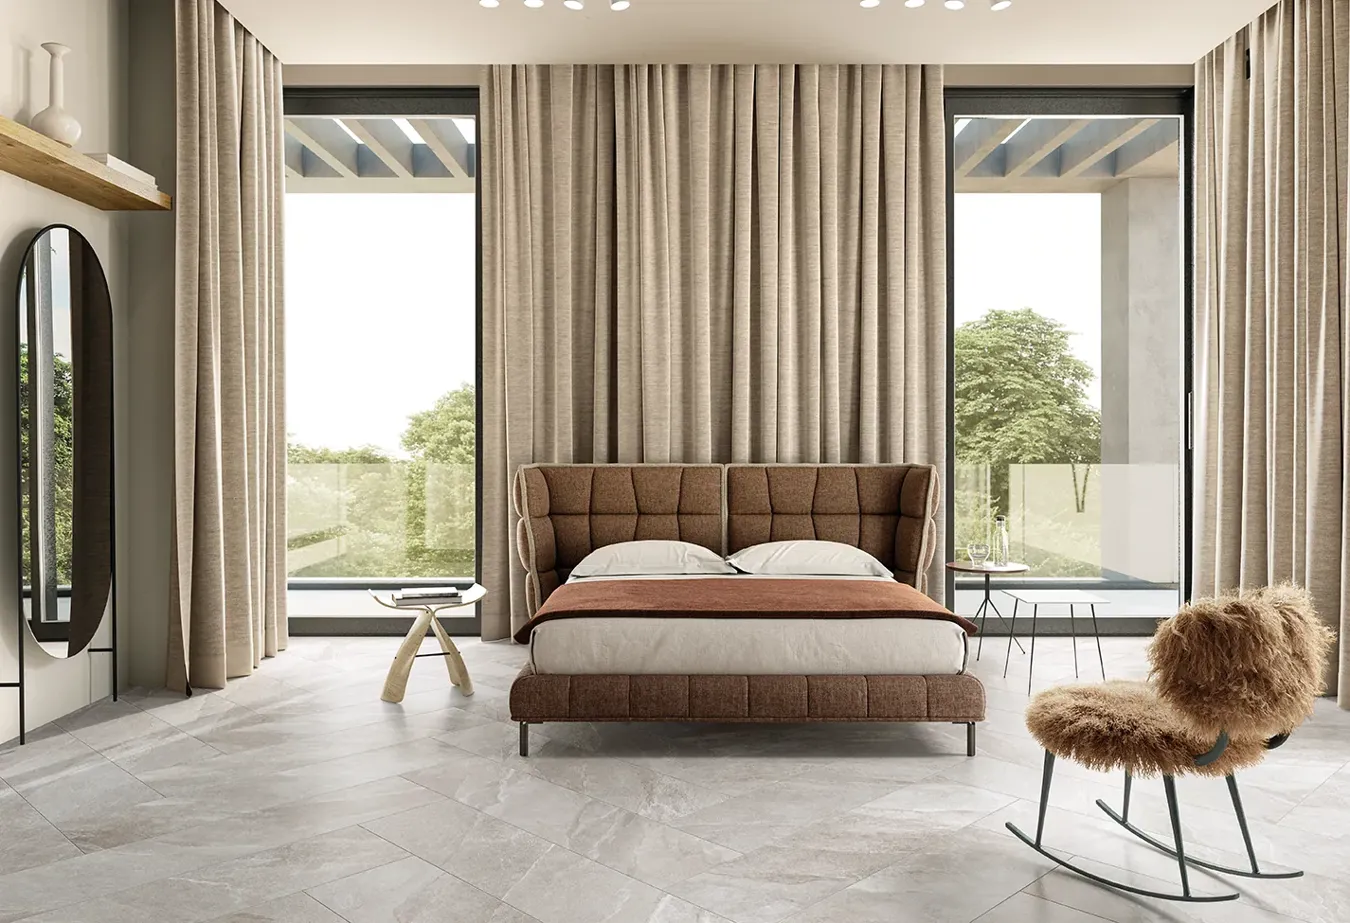 Элегантная спальня с напольной плиткой под камень цвета грейдж из коллекции Ubik, дизайнерская кровать и шторы в тон.